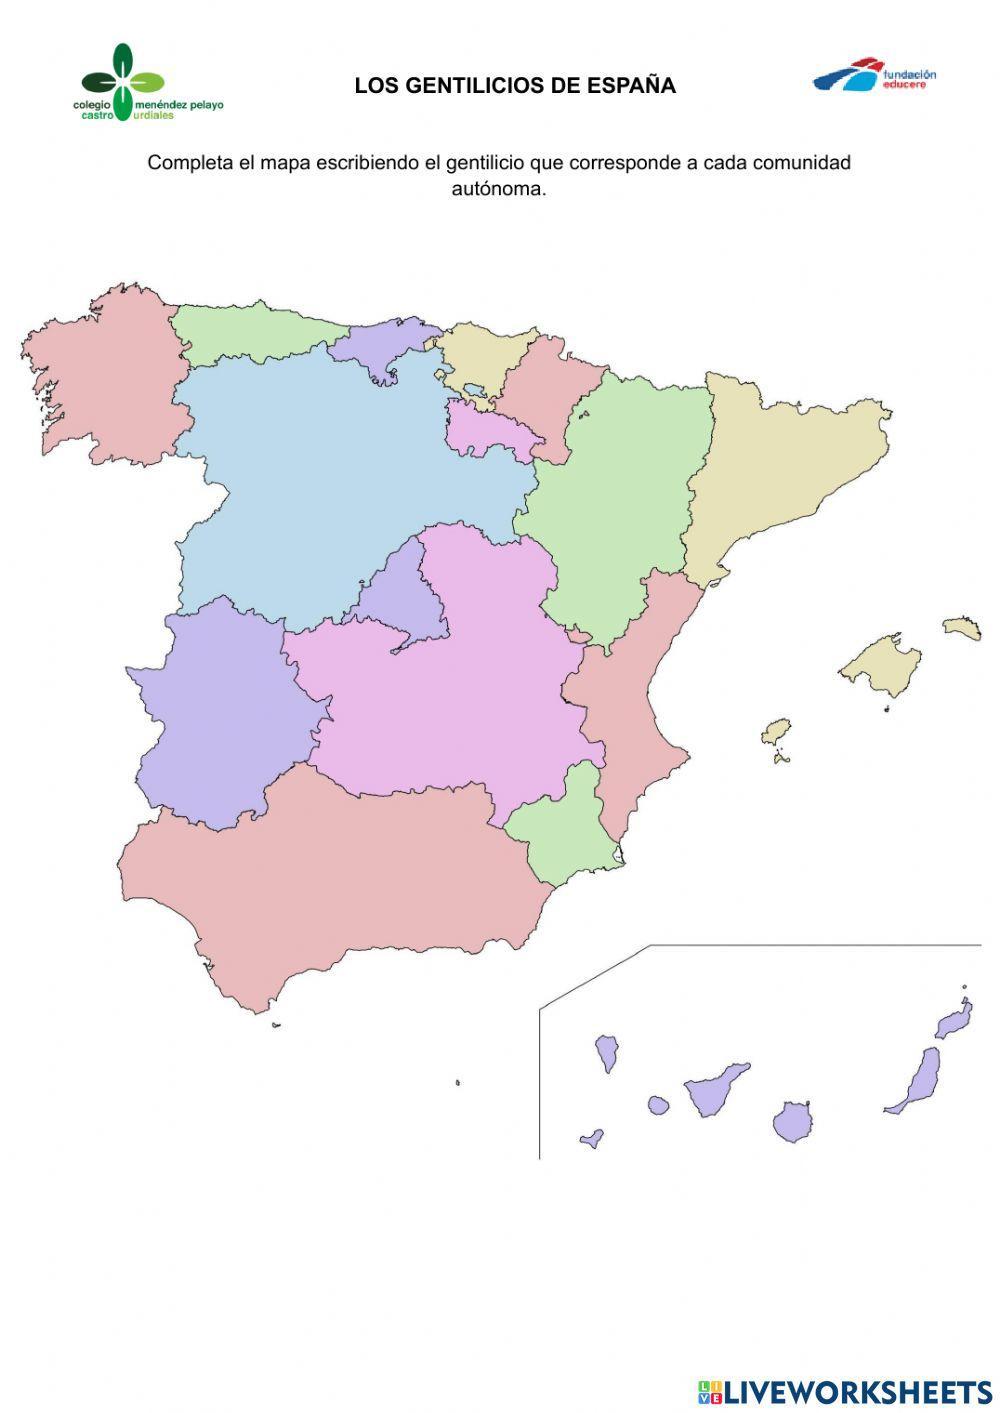 Gentilicios de España